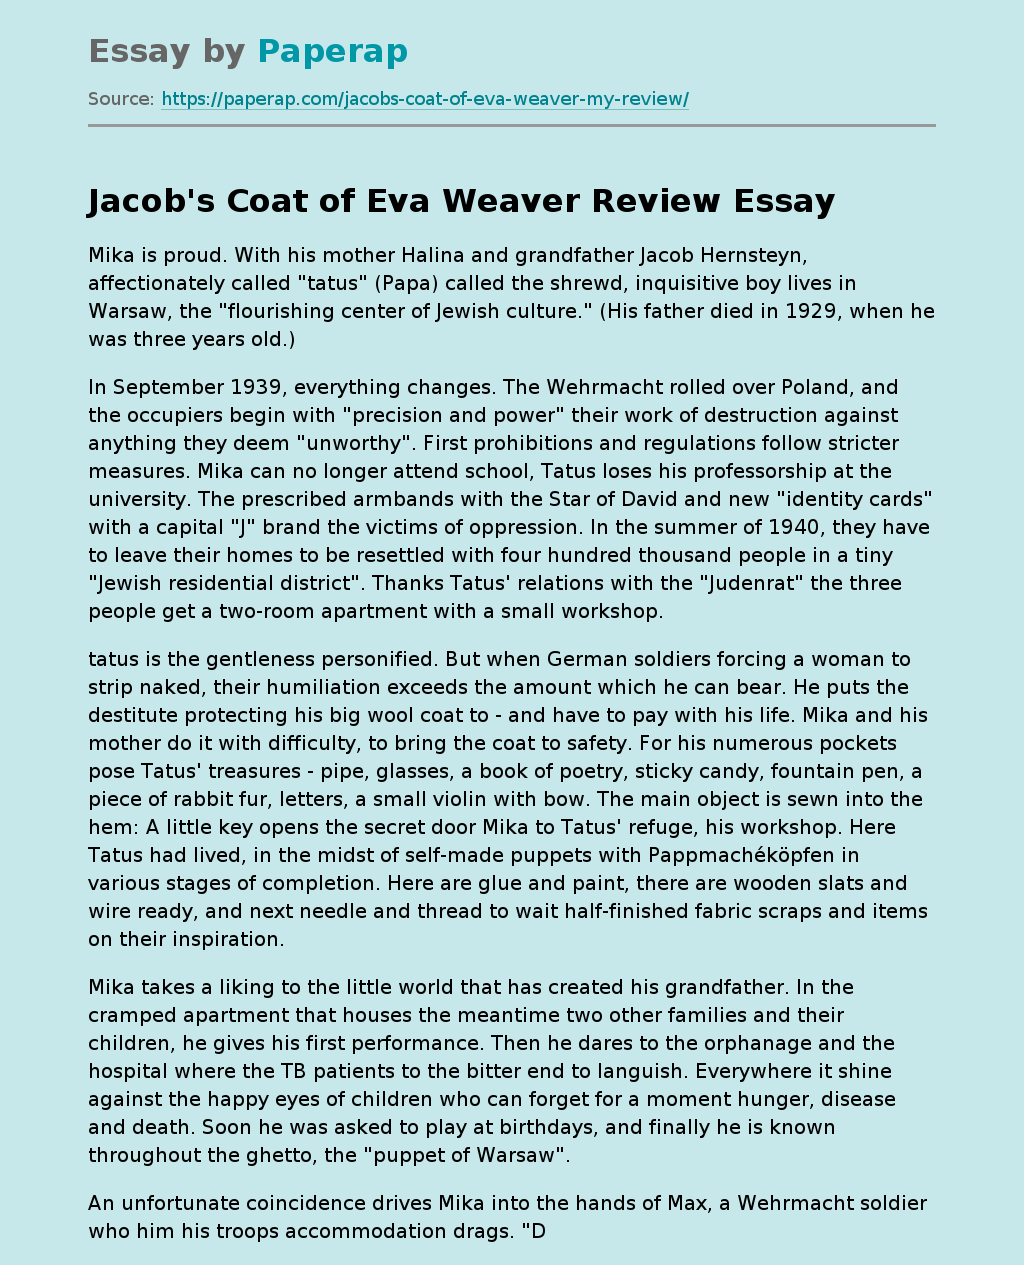 "Jacob's Coat" by Eva Weaver